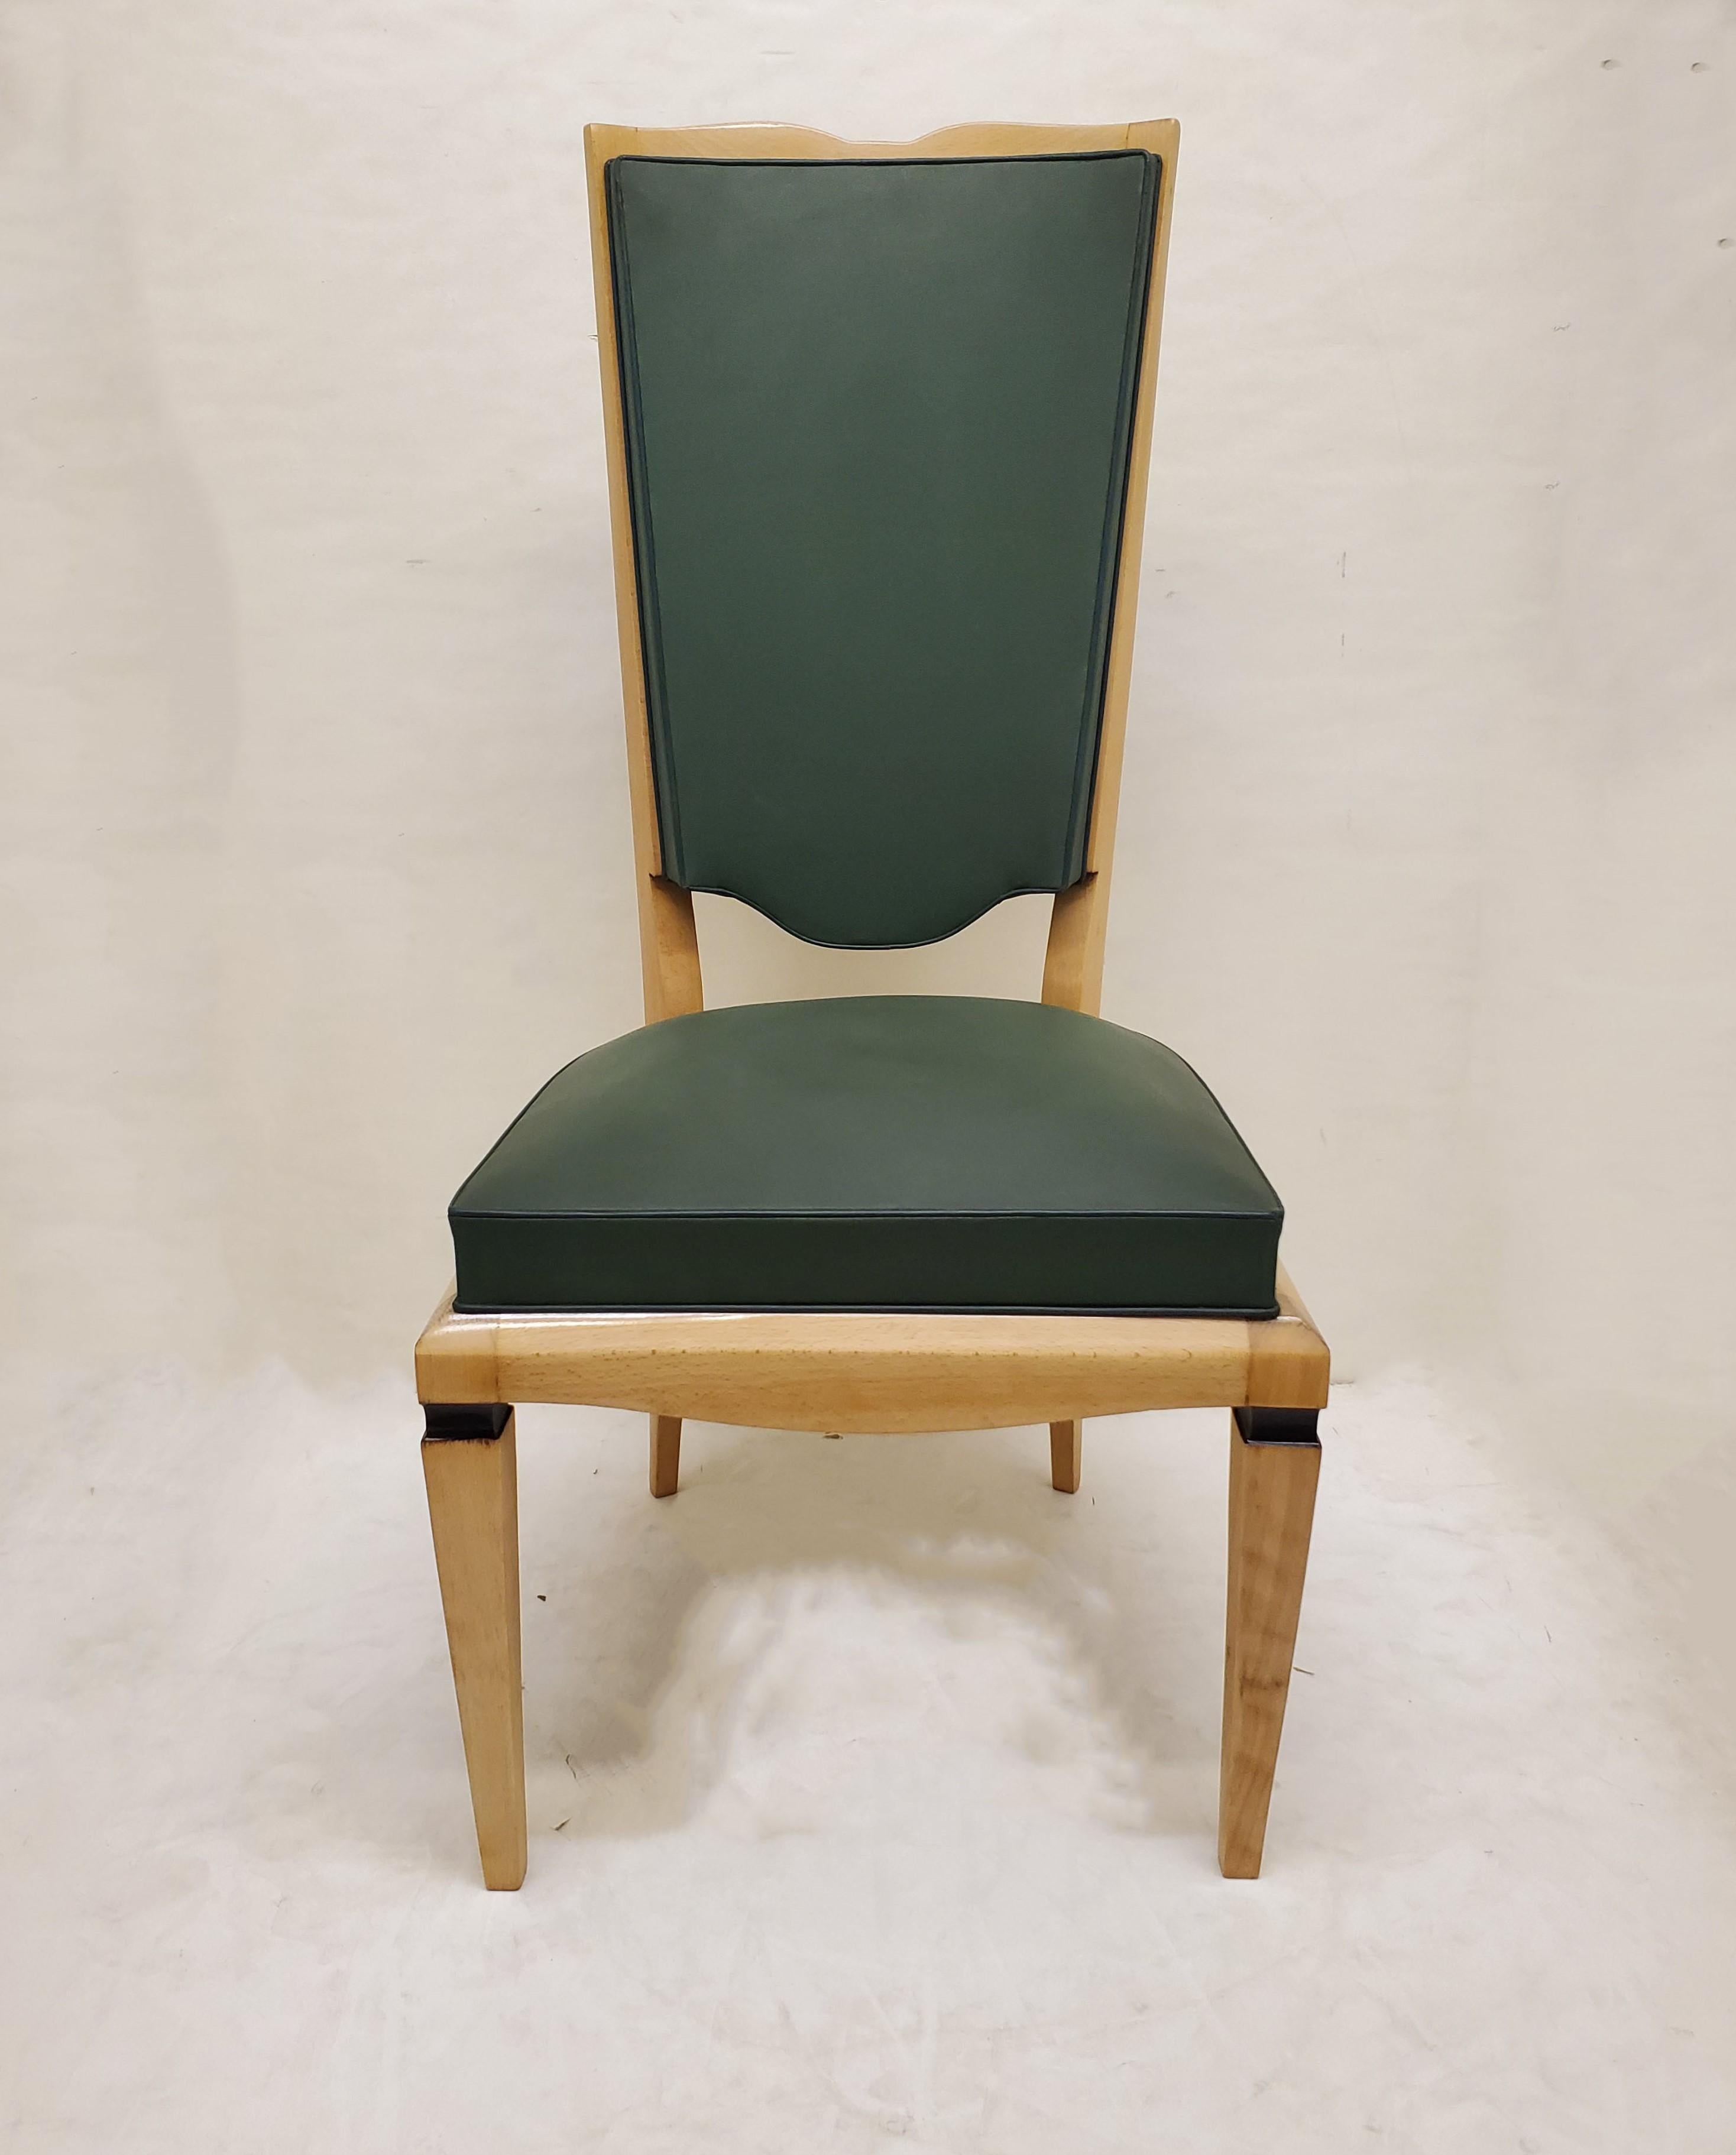 Un bel ensemble de six chaises de salle à manger d'origine Art Déco en bois blond à haut dossier, attribué à Maurice Jallot.
Grand dossier élégant avec crête supérieure curviligne et dossier inférieur en forme de bouclier, doté d'élégants pieds